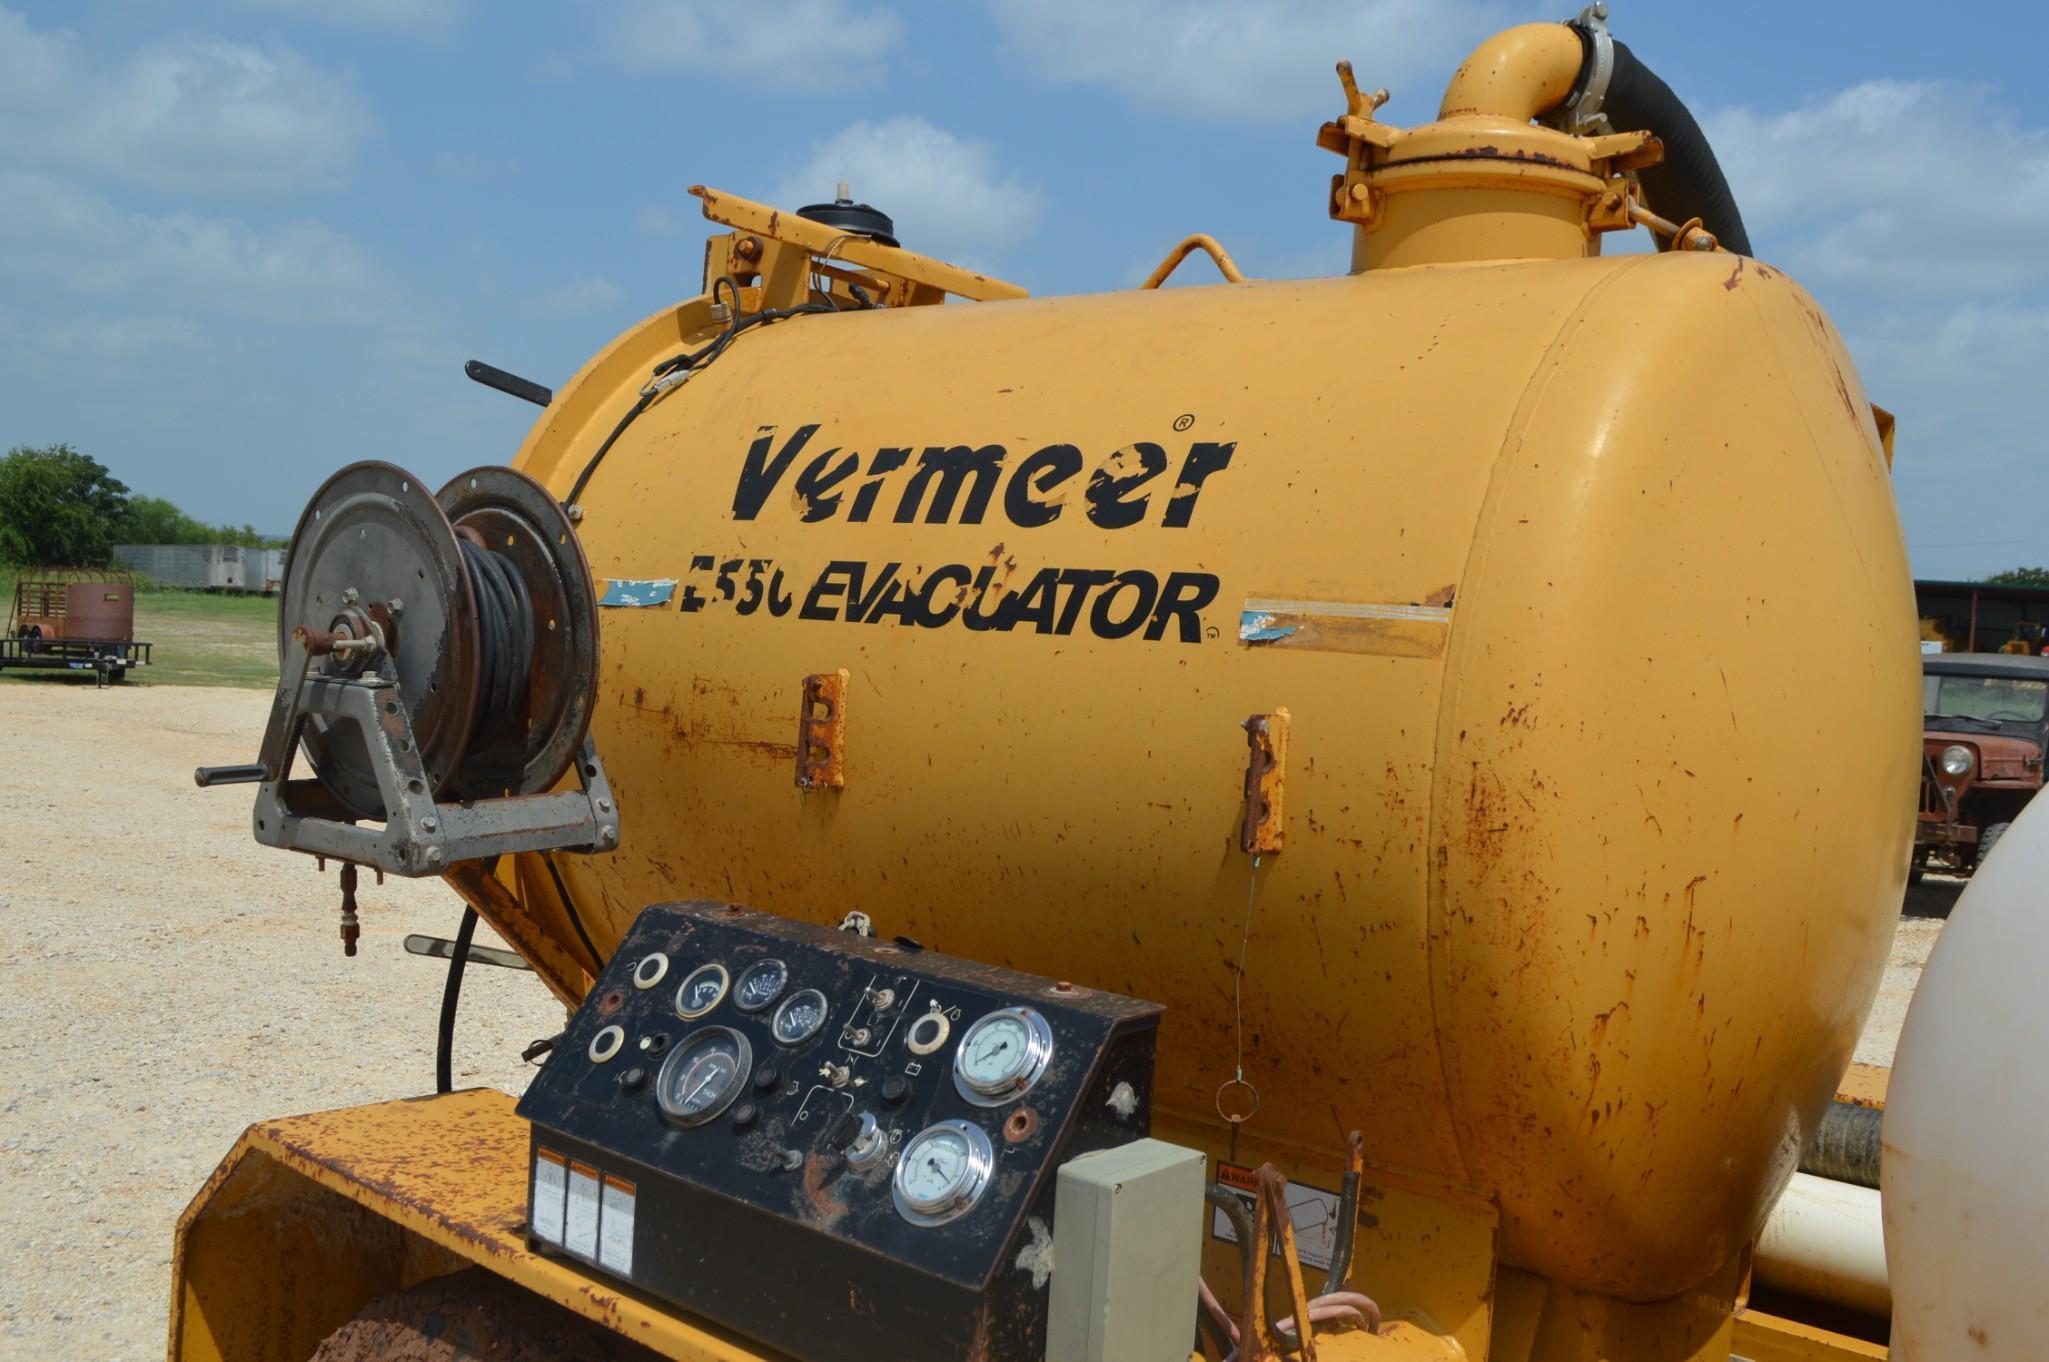 Vermeer E550 Evacuator Trailer